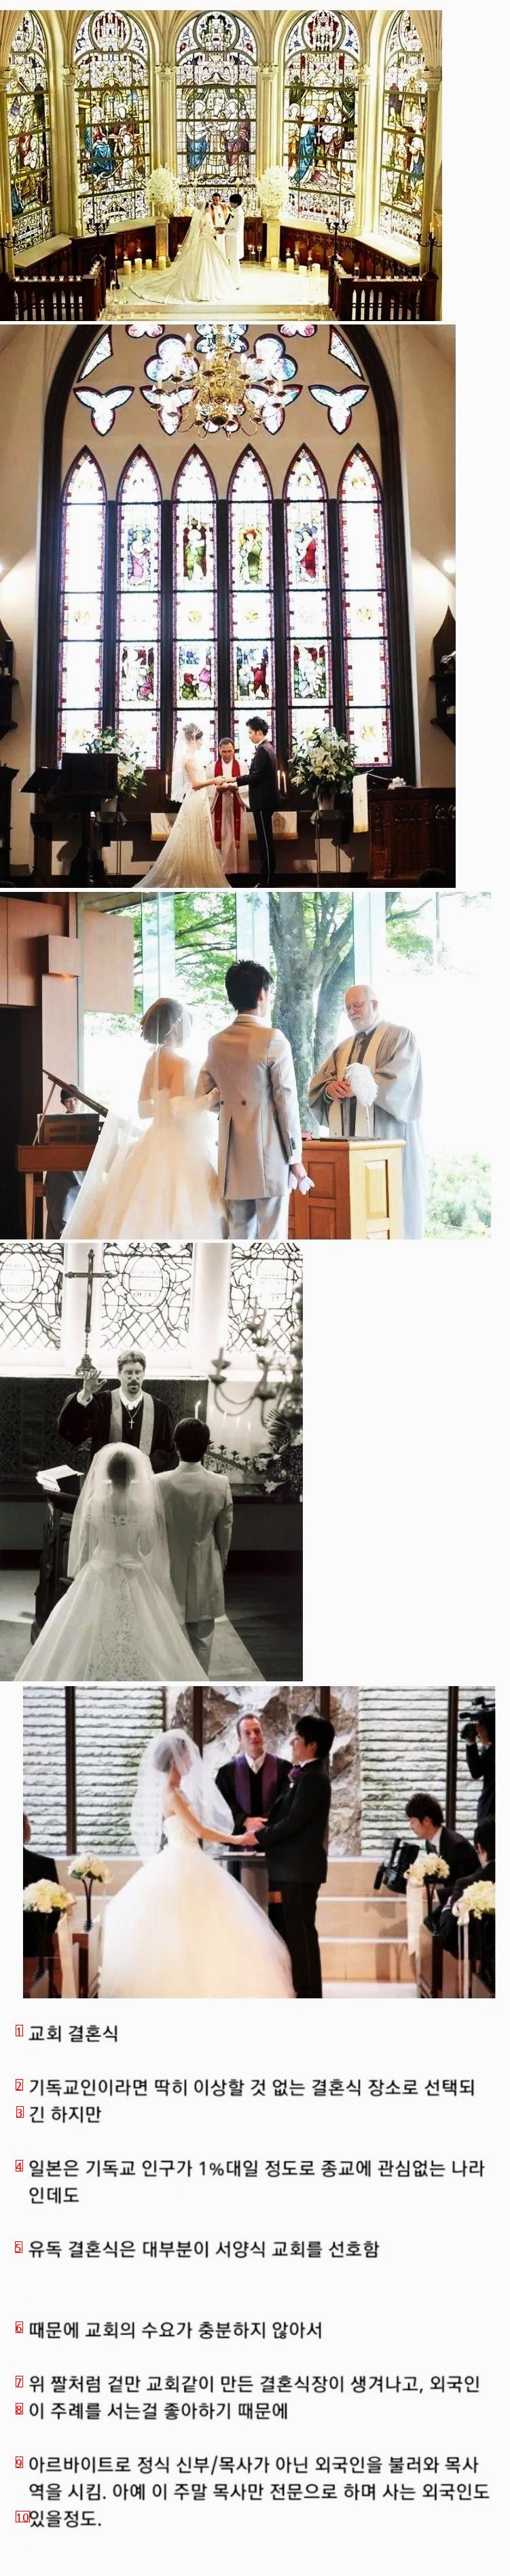 일본의 재미난 결혼식 문화